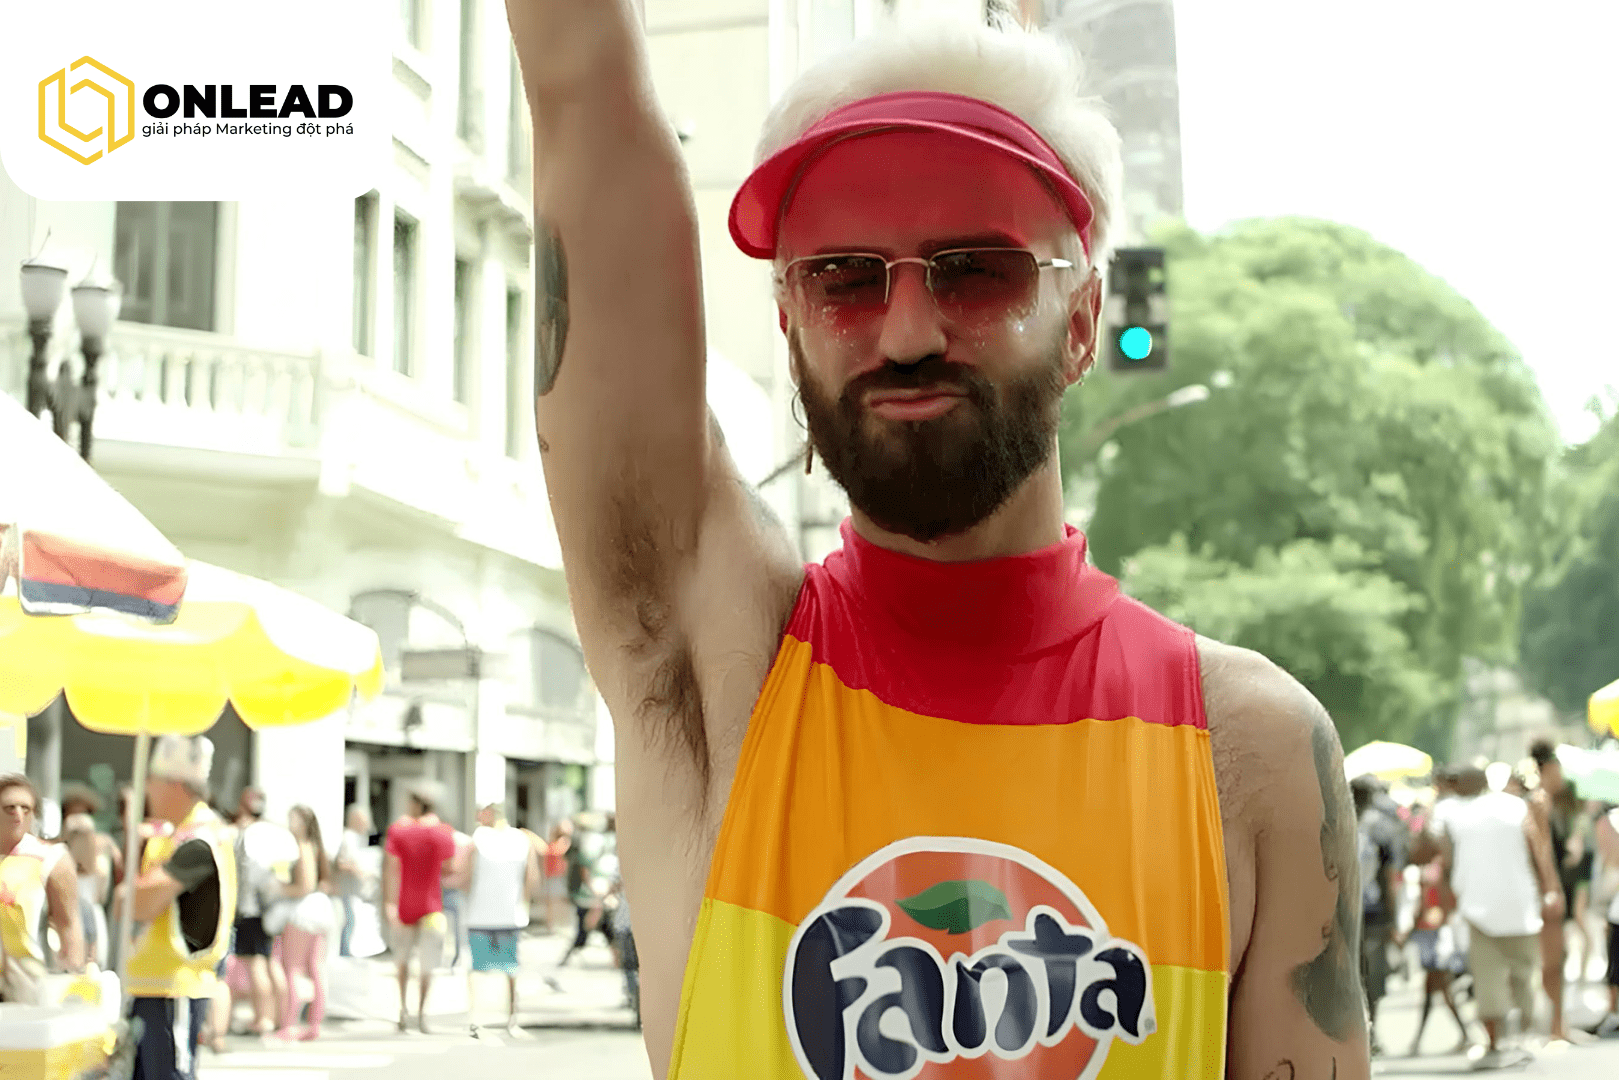 Chính sự đổi mới và điểm nhấn trong việc đổi Coca thành Fanta là yếu tố chính cho sự thành công của chiến dịch